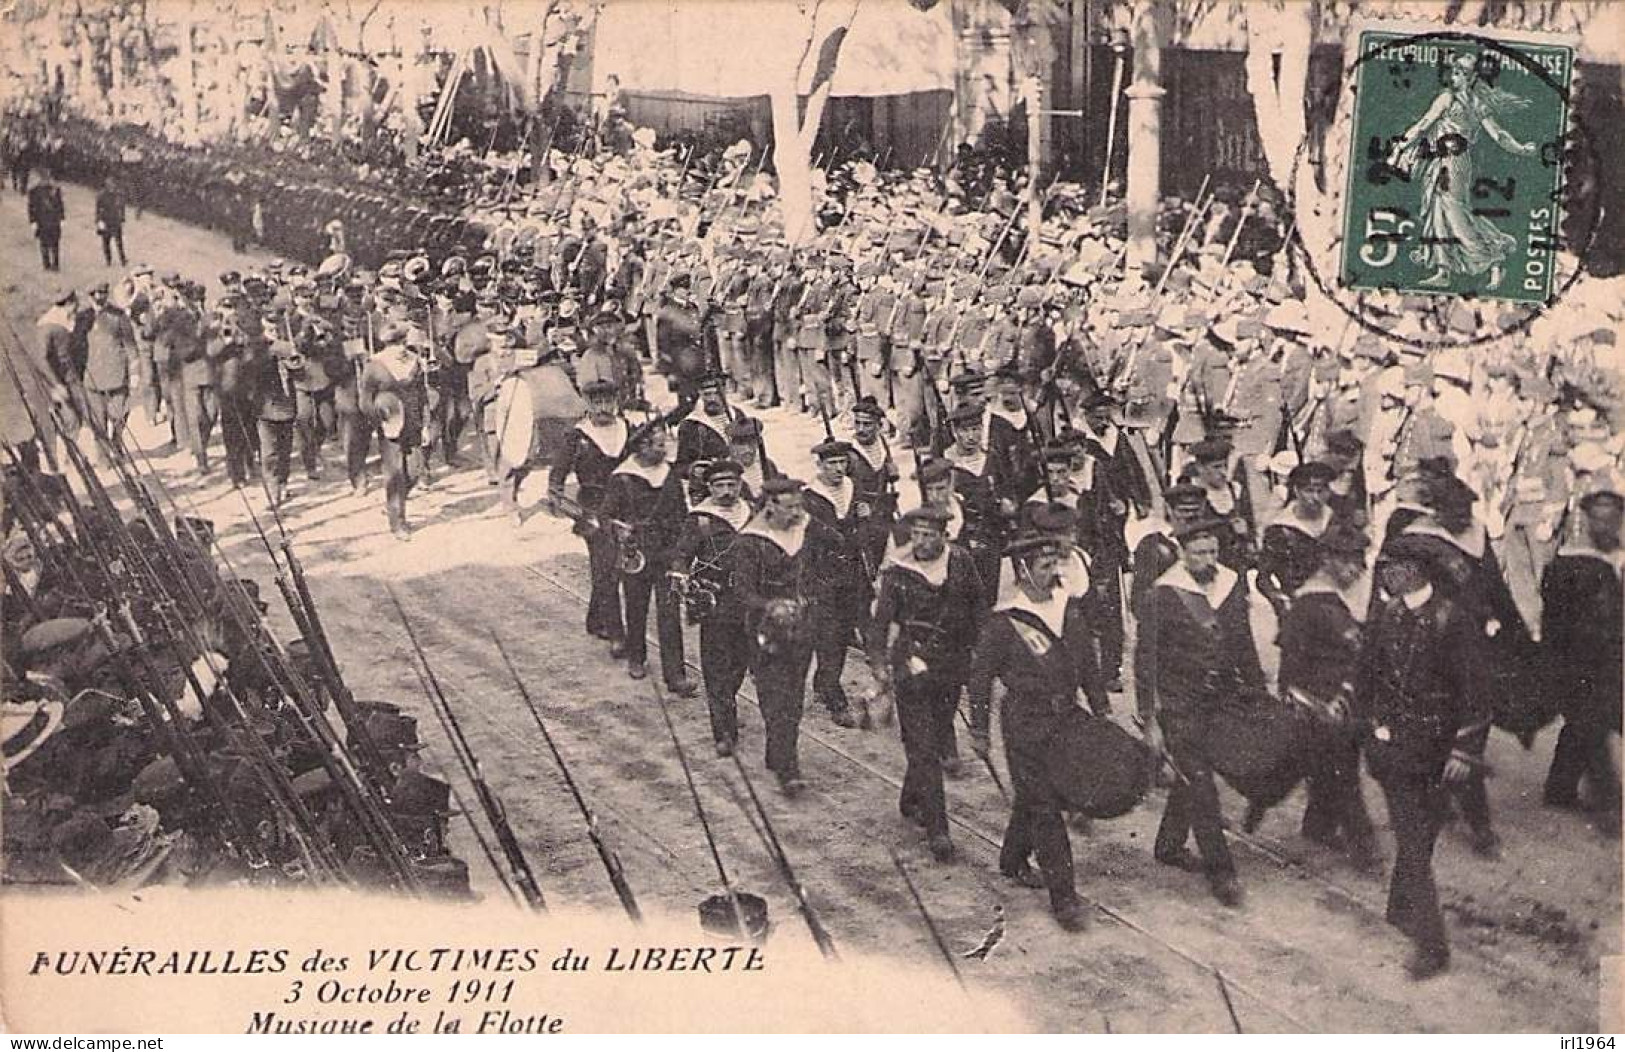 FUNERAILLES DES VICTIMES DU LIBERTE 3 10 1911 LA MUSIQUE DE LA FLOTTE (1912) - Altre Guerre